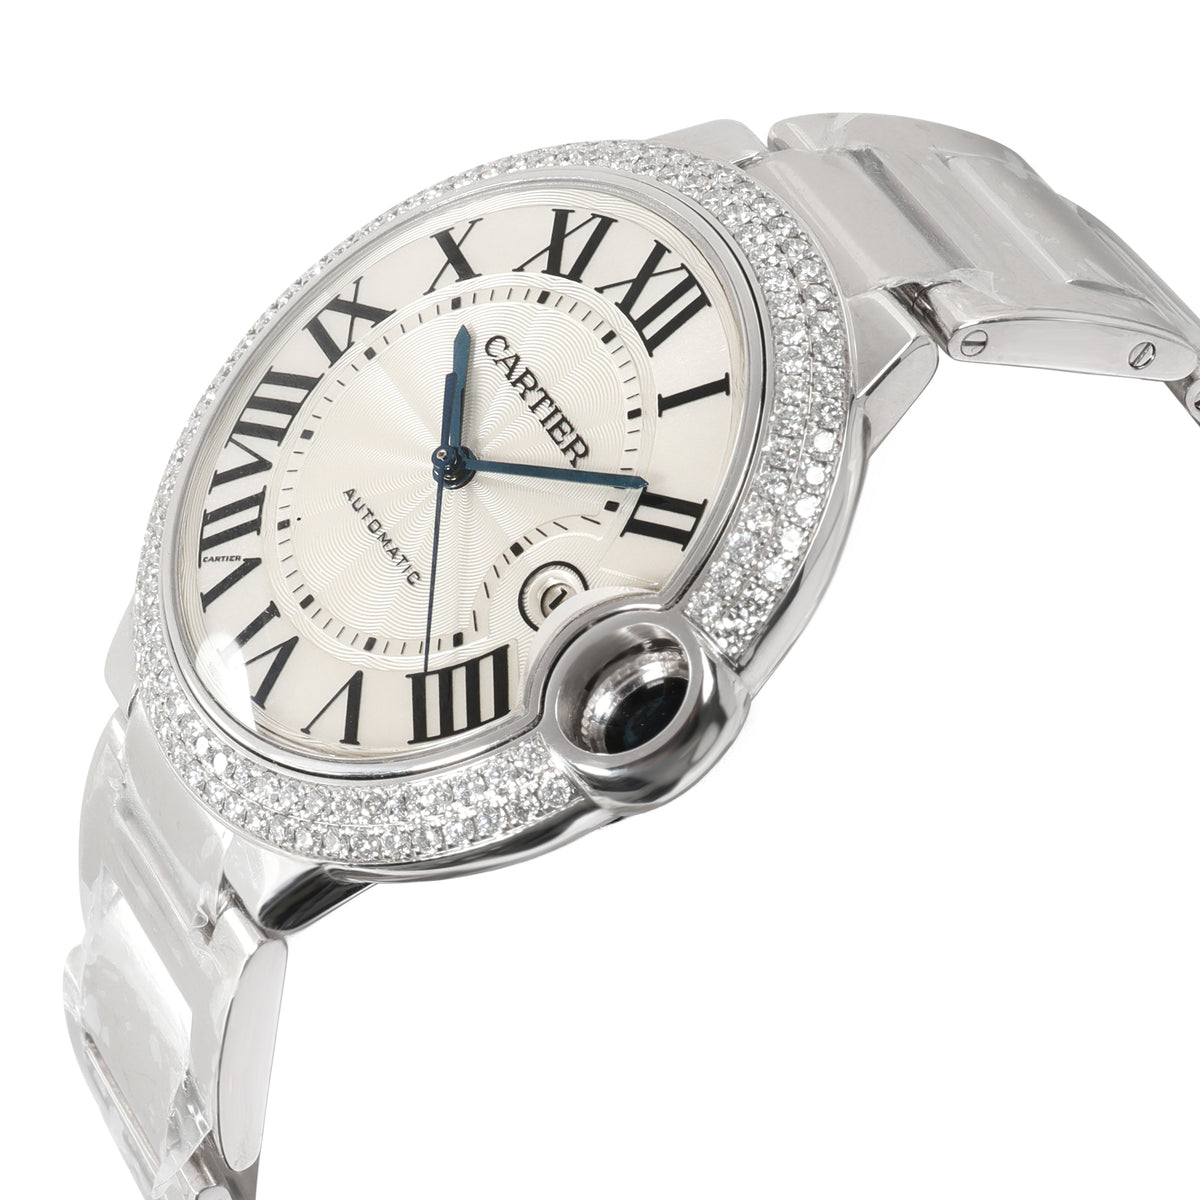 Cartier Ballon Bleu WE9009Z3 Men's Watch in 18kt White Gold